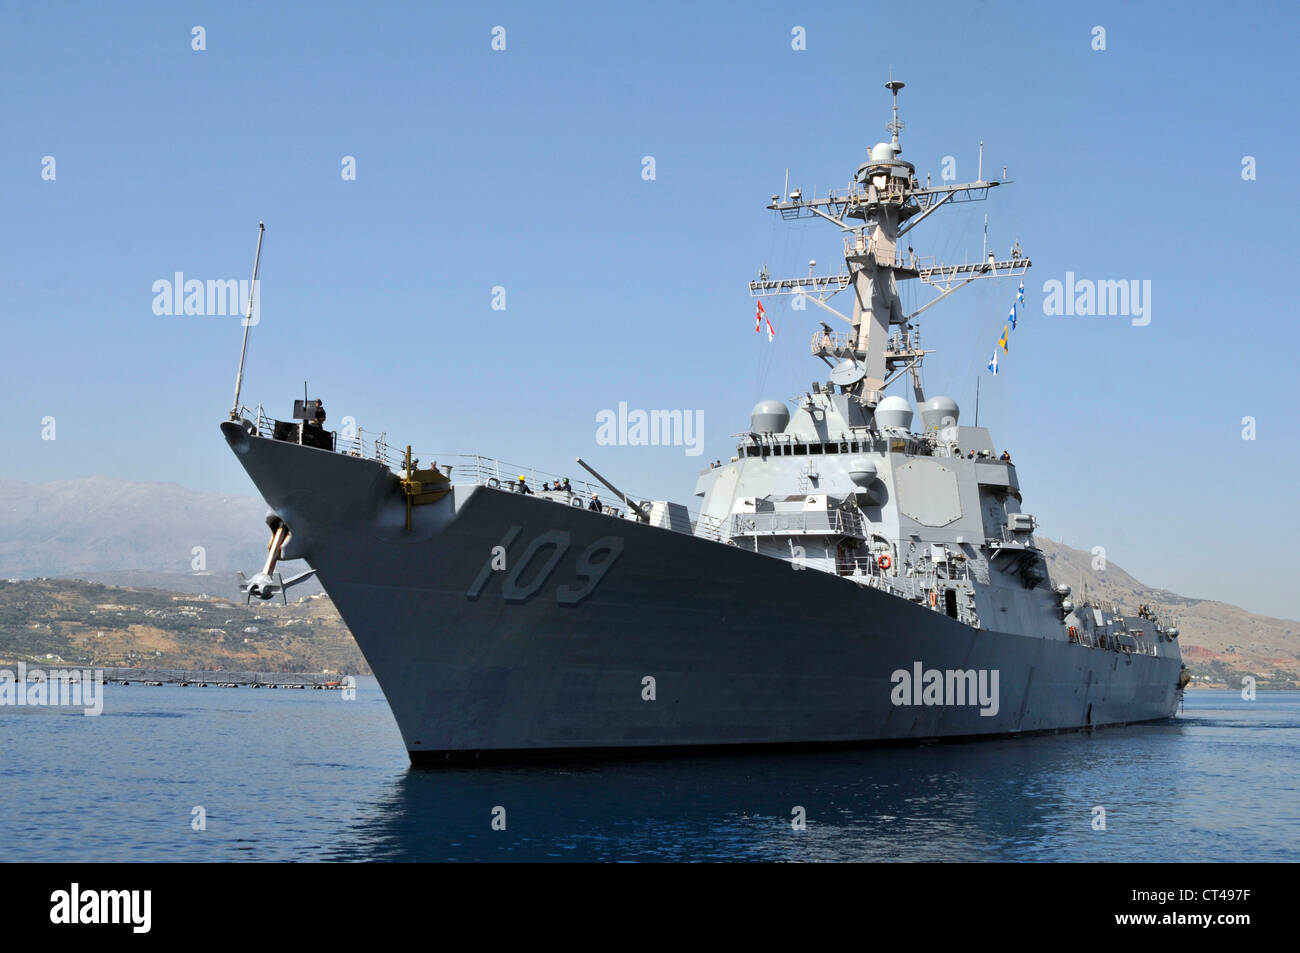 Der geführte Raketenzerstörer USS Jason Dunham (DDG 109) verlässt den Pier nach einem planmäßigen Hafenbesuch auf der griechischen Insel Kreta. Jason Dunham ist in Norfolk, VA, heimisch und befindet sich derzeit in ihrem ersten Einsatz im Verantwortungsbereich der 6. US-Flotte. Stockfoto